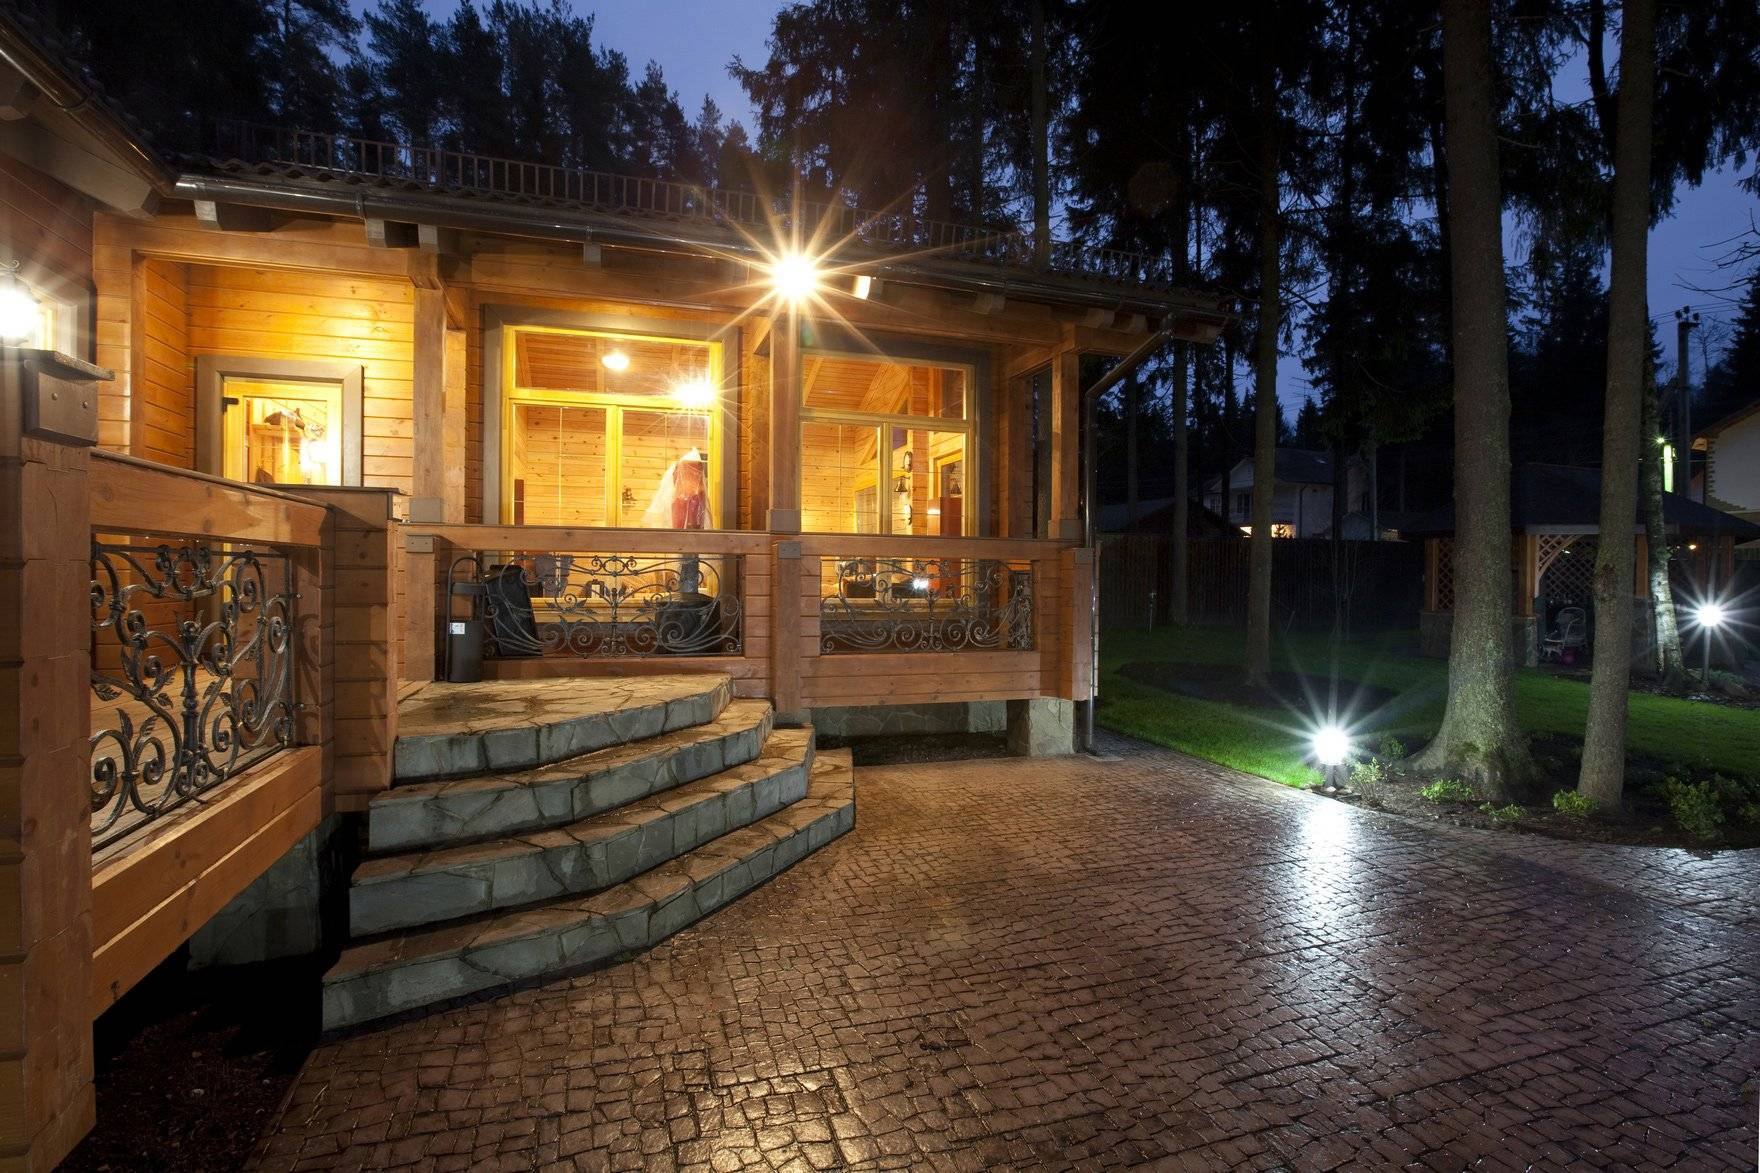 Архитектурная ночная подсветка фасада загородного частного дома, как сделать красивое наружное освещение светодиодной лентой: рассмотрим во всех подробностях